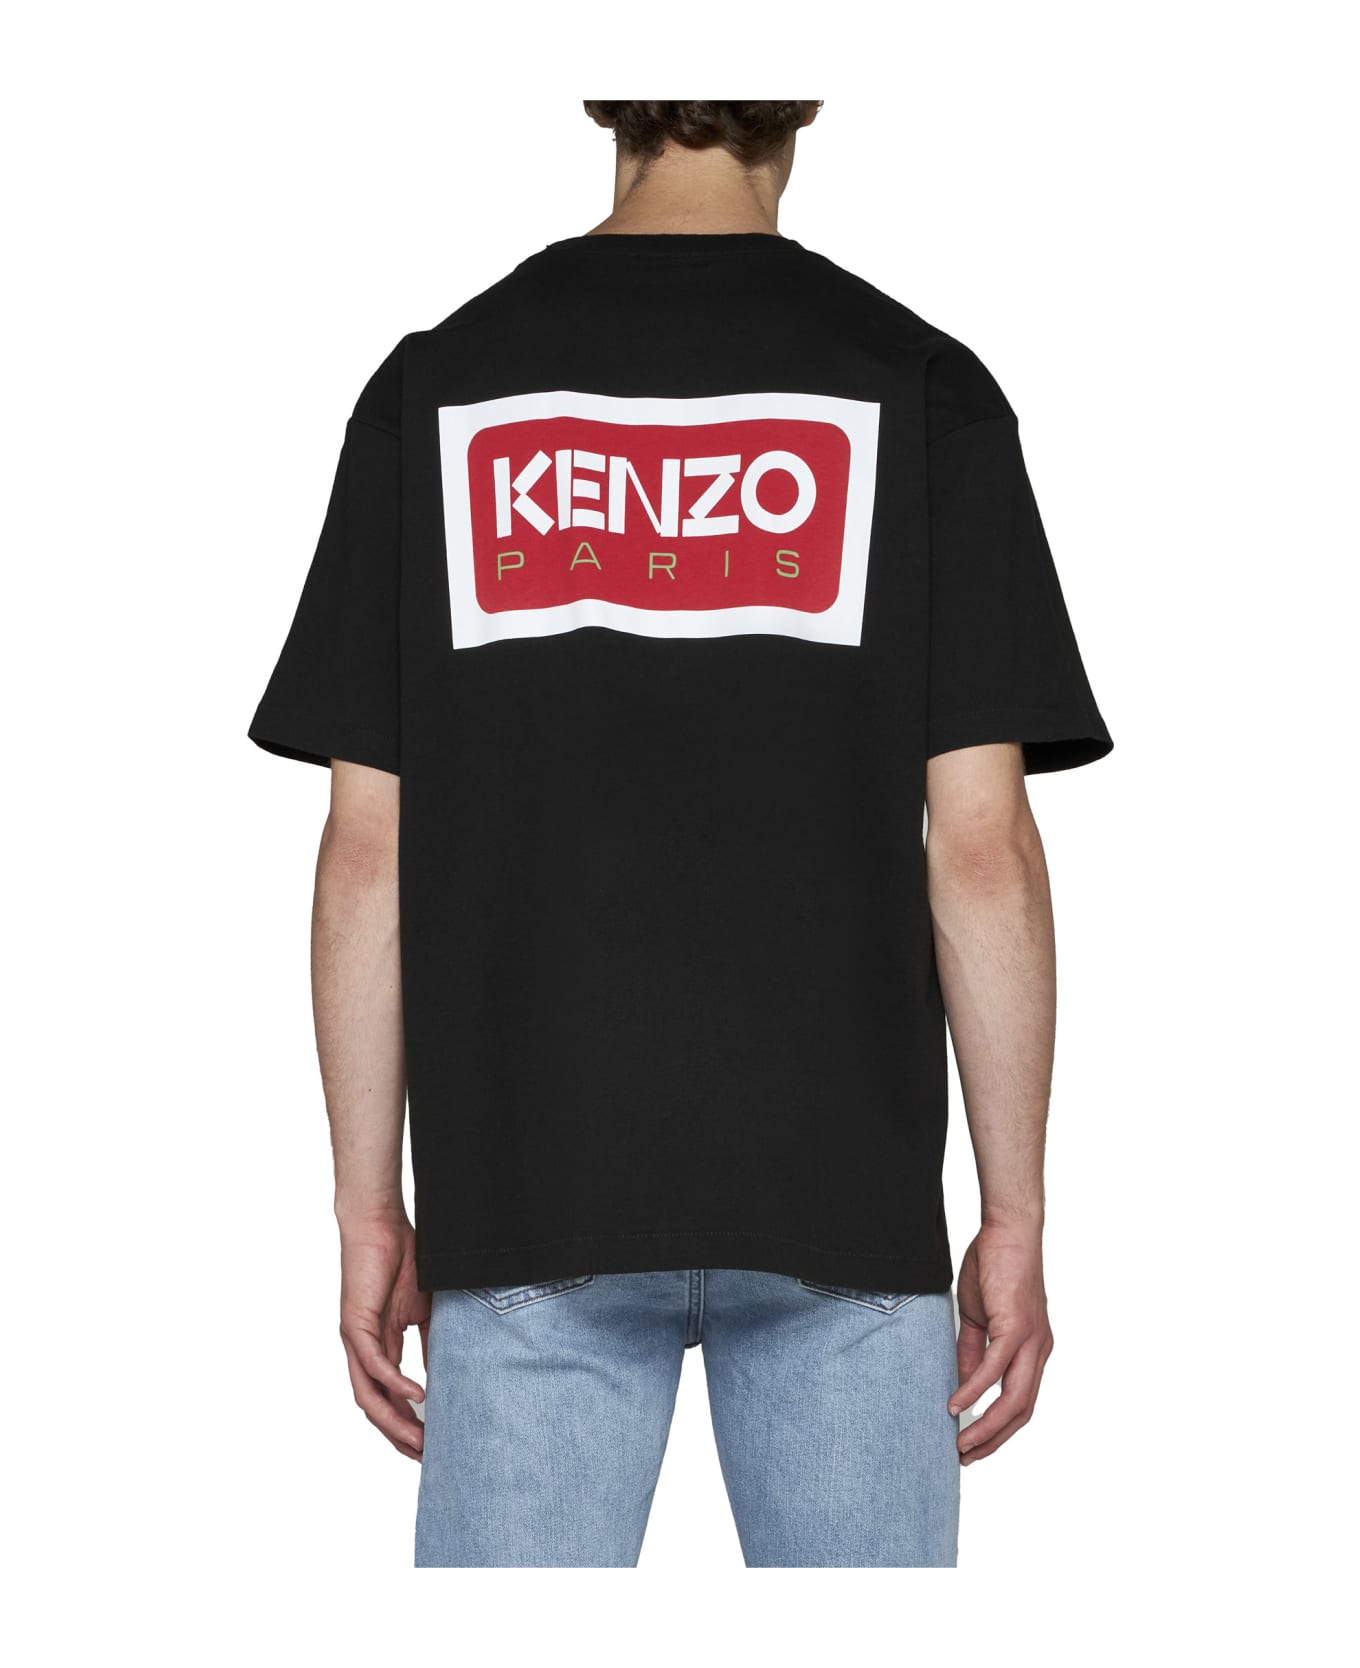 Kenzo Paris Logo T-shirt - J Black